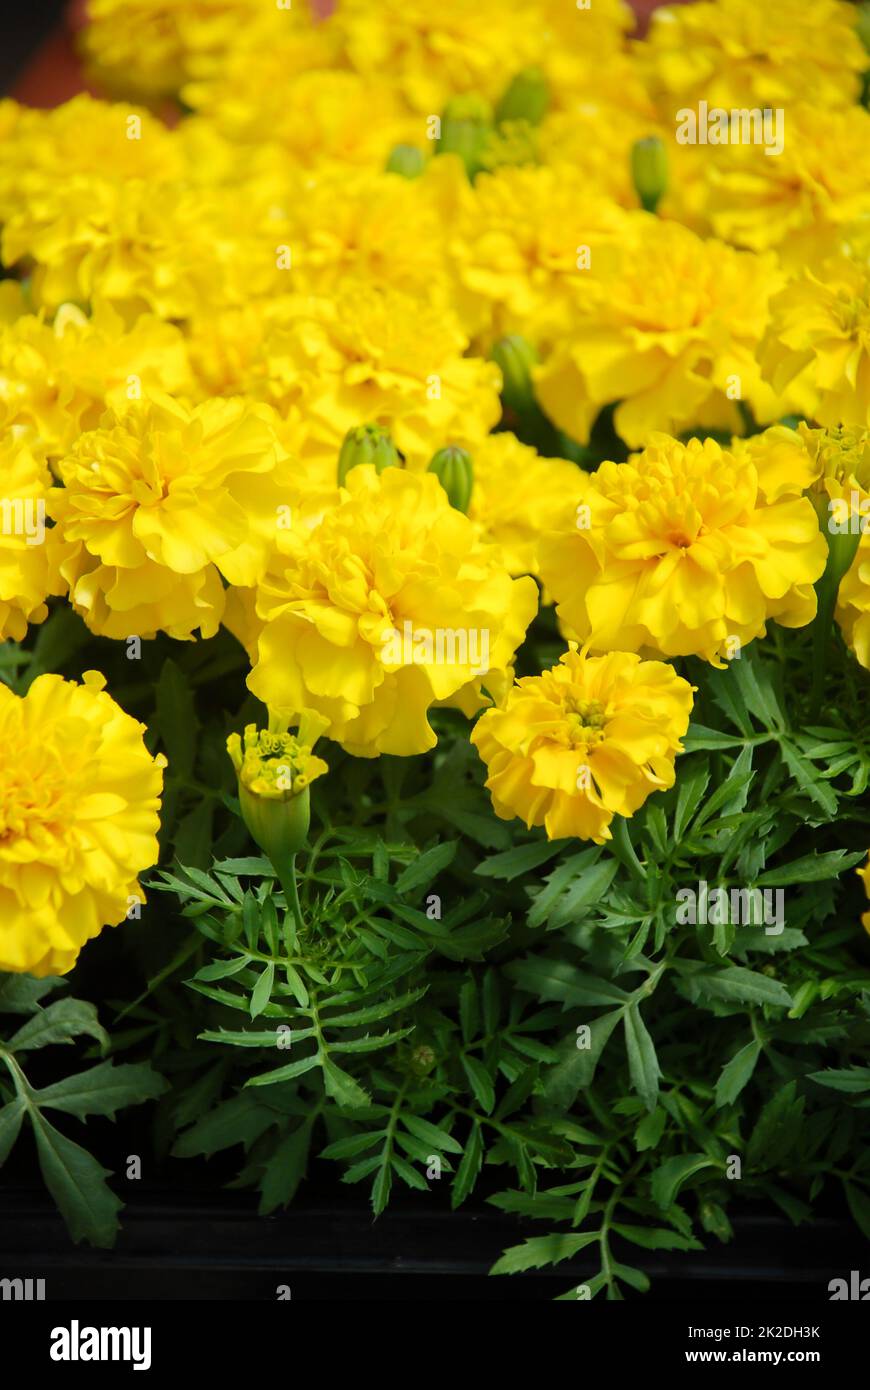 Tagetes patula Marigold francese in fiore, fiori gialli arancio, foglie verdi Foto Stock